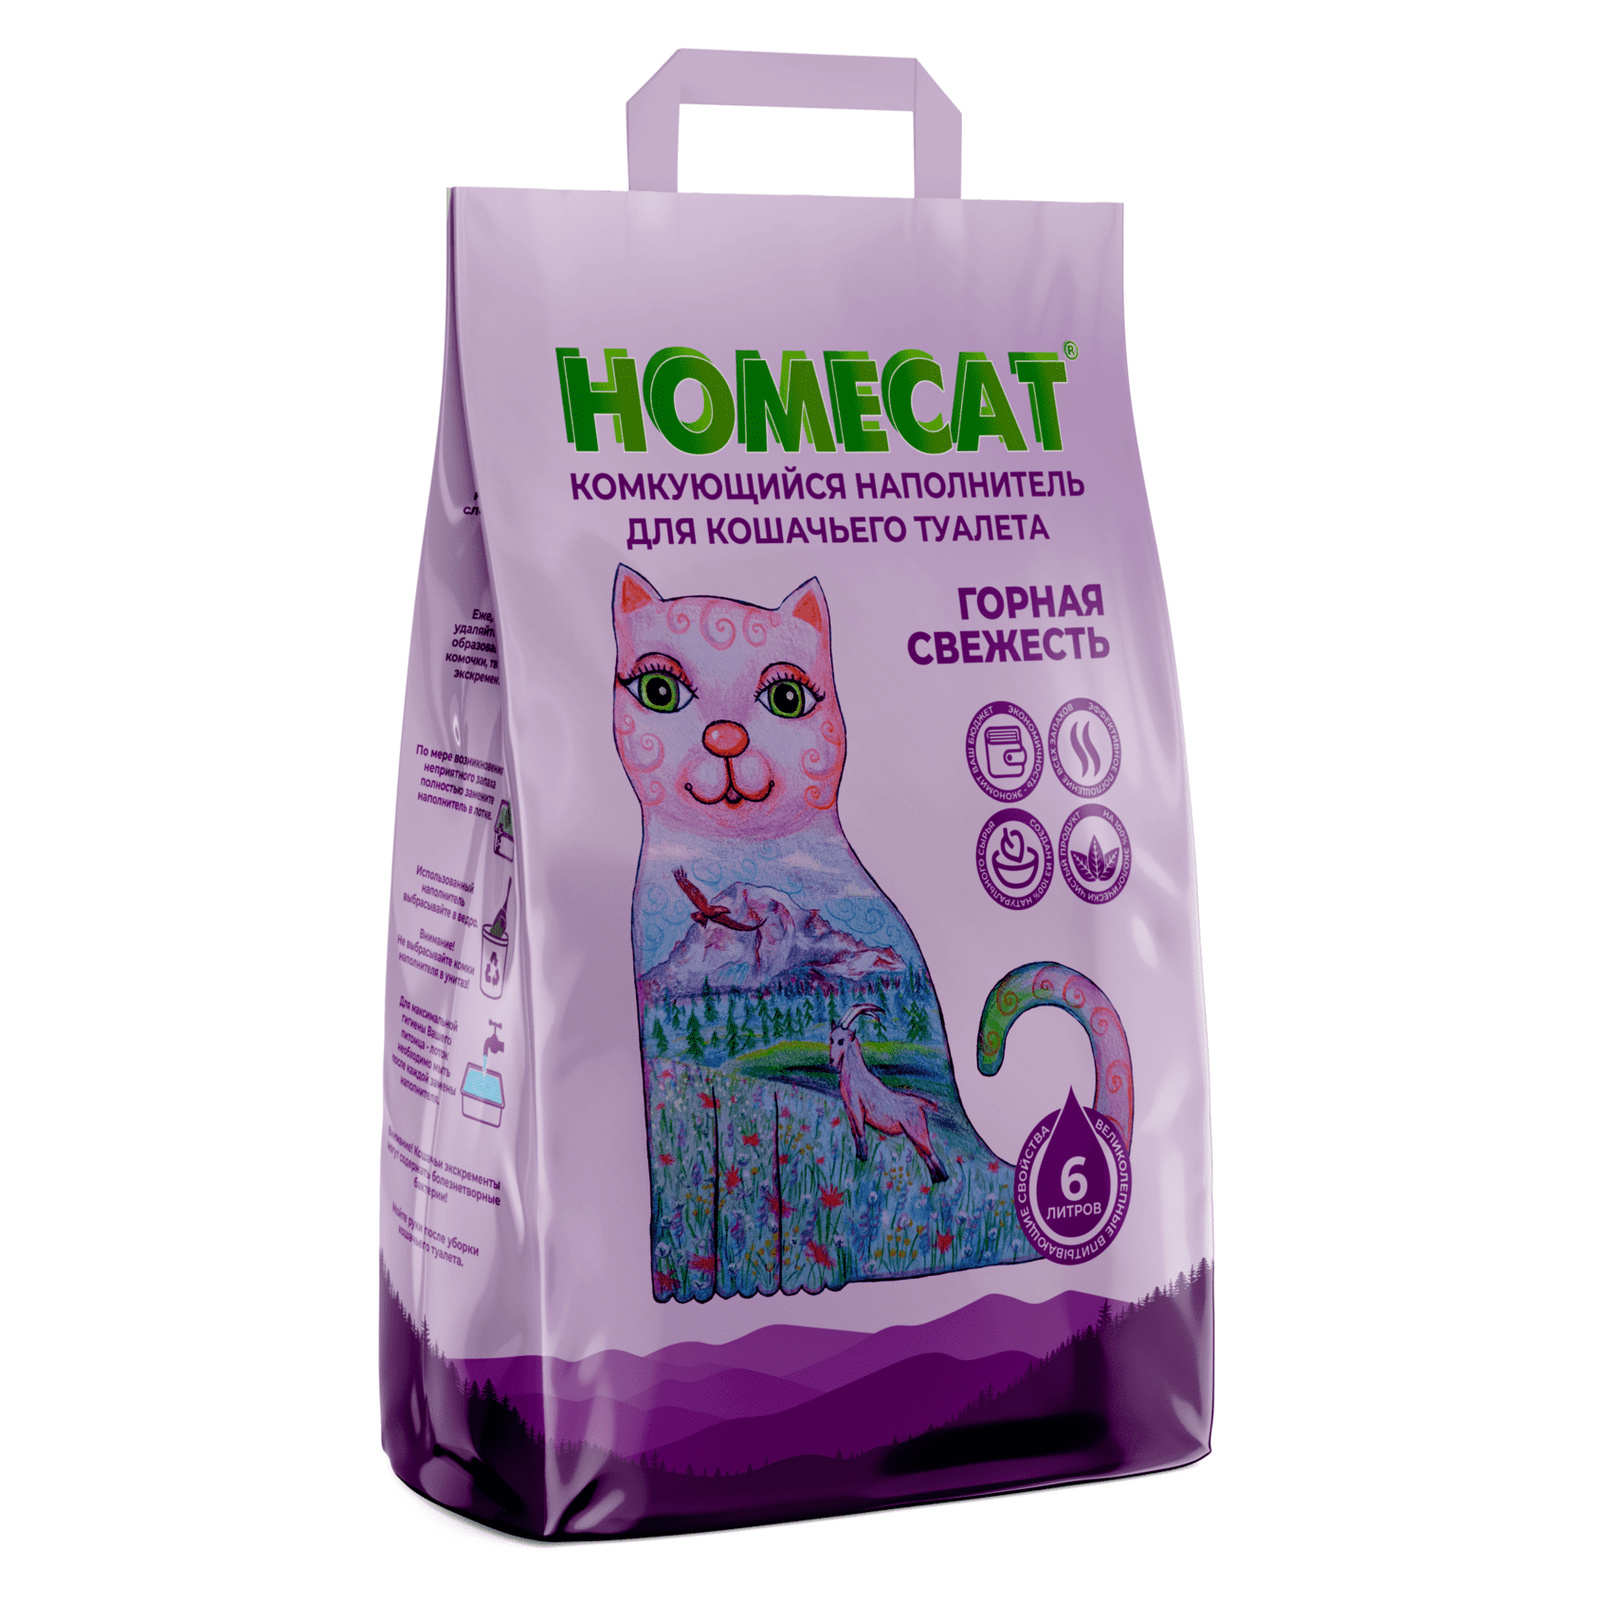 Homecat наполнитель Homecat наполнитель комкующийся наполнитель (10 кг) homecat наполнитель homecat наполнитель комкующийся наполнитель эколайн без запаха 5 6 кг